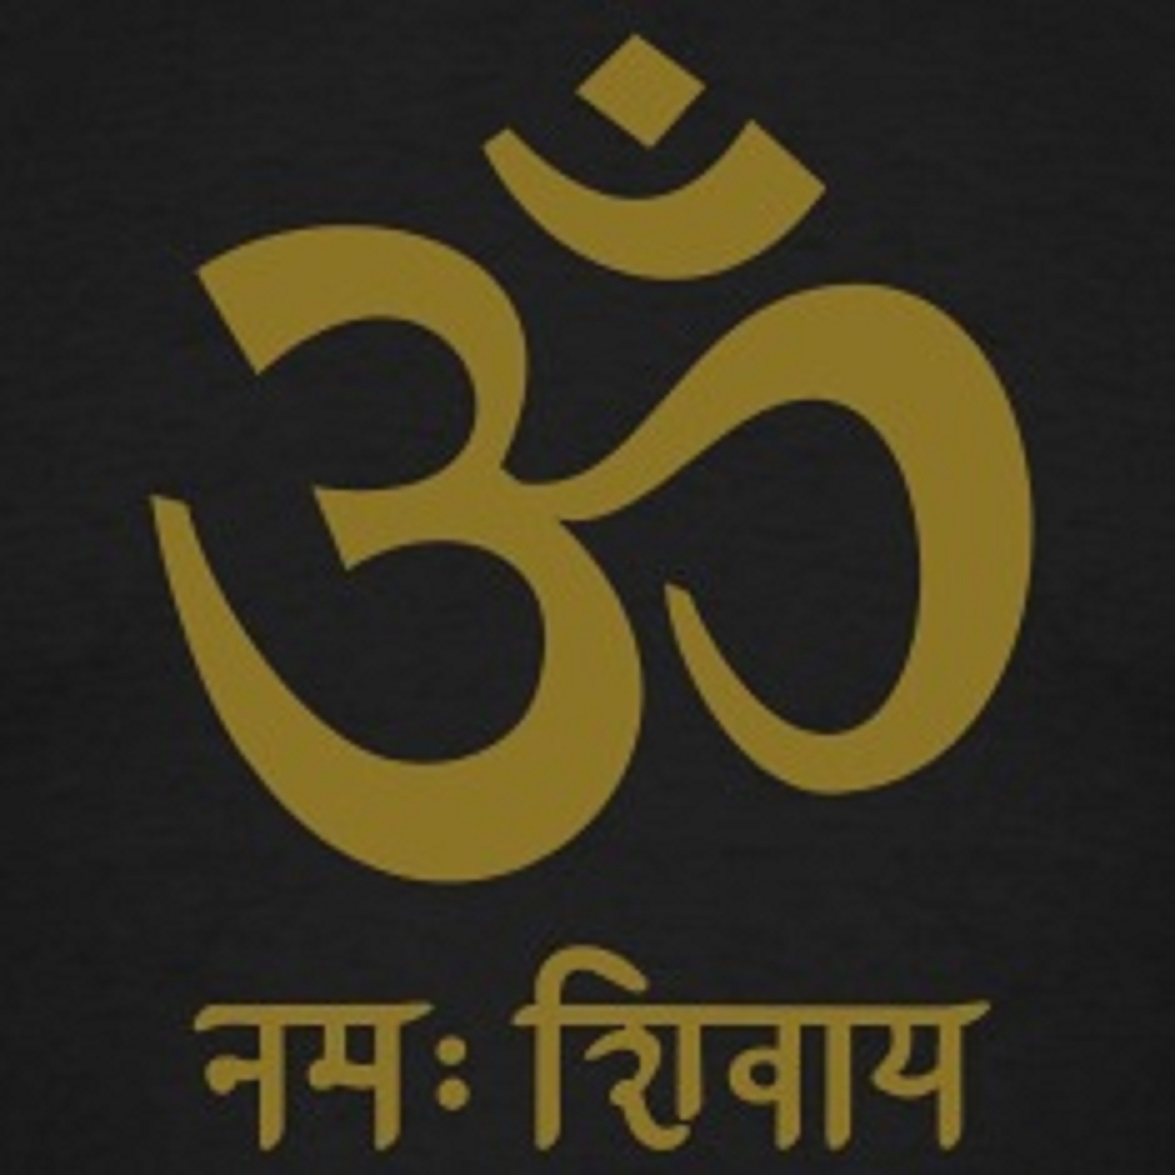 Шивайя нама ом значение. Om Namah Shivaya санскрит. Ом Намах Шивая на санскрите. Мантра ом Намах Шивайя на санскрите. Ом надпись на санскрите.